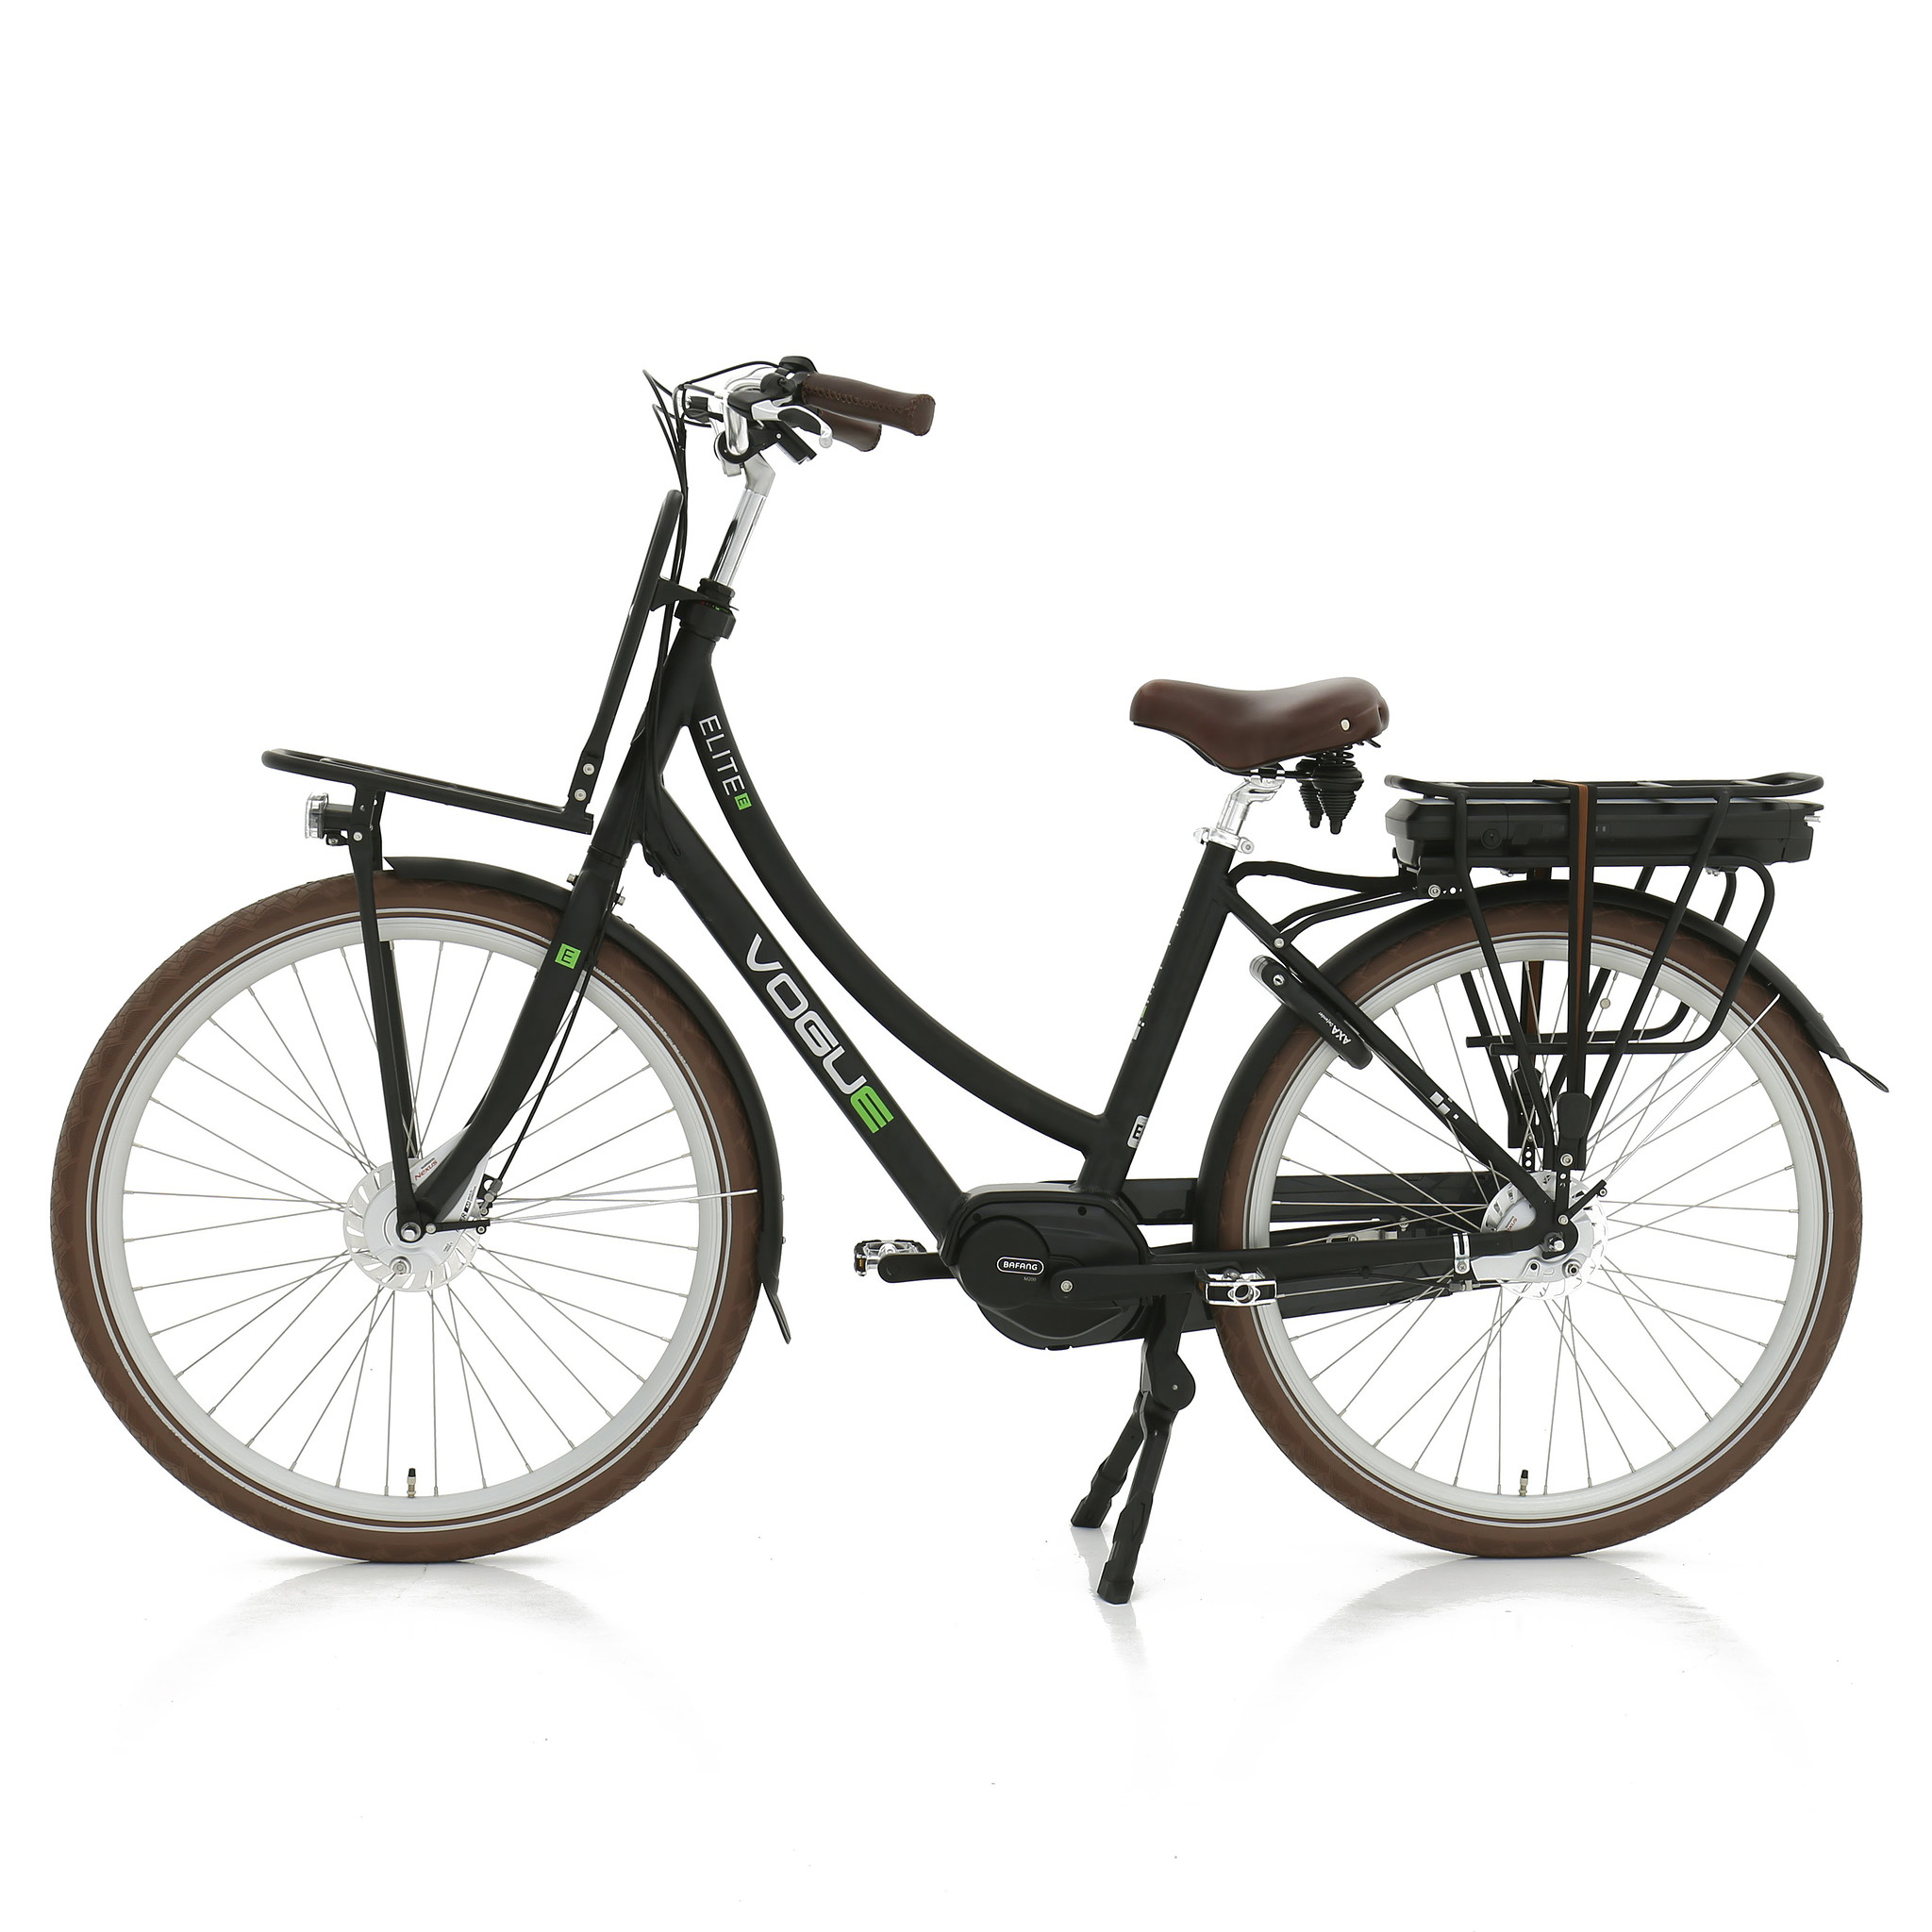 Vogue Elektrische fiets Elite MDS Dames 50 cm Zwart 468 Wh Zwart